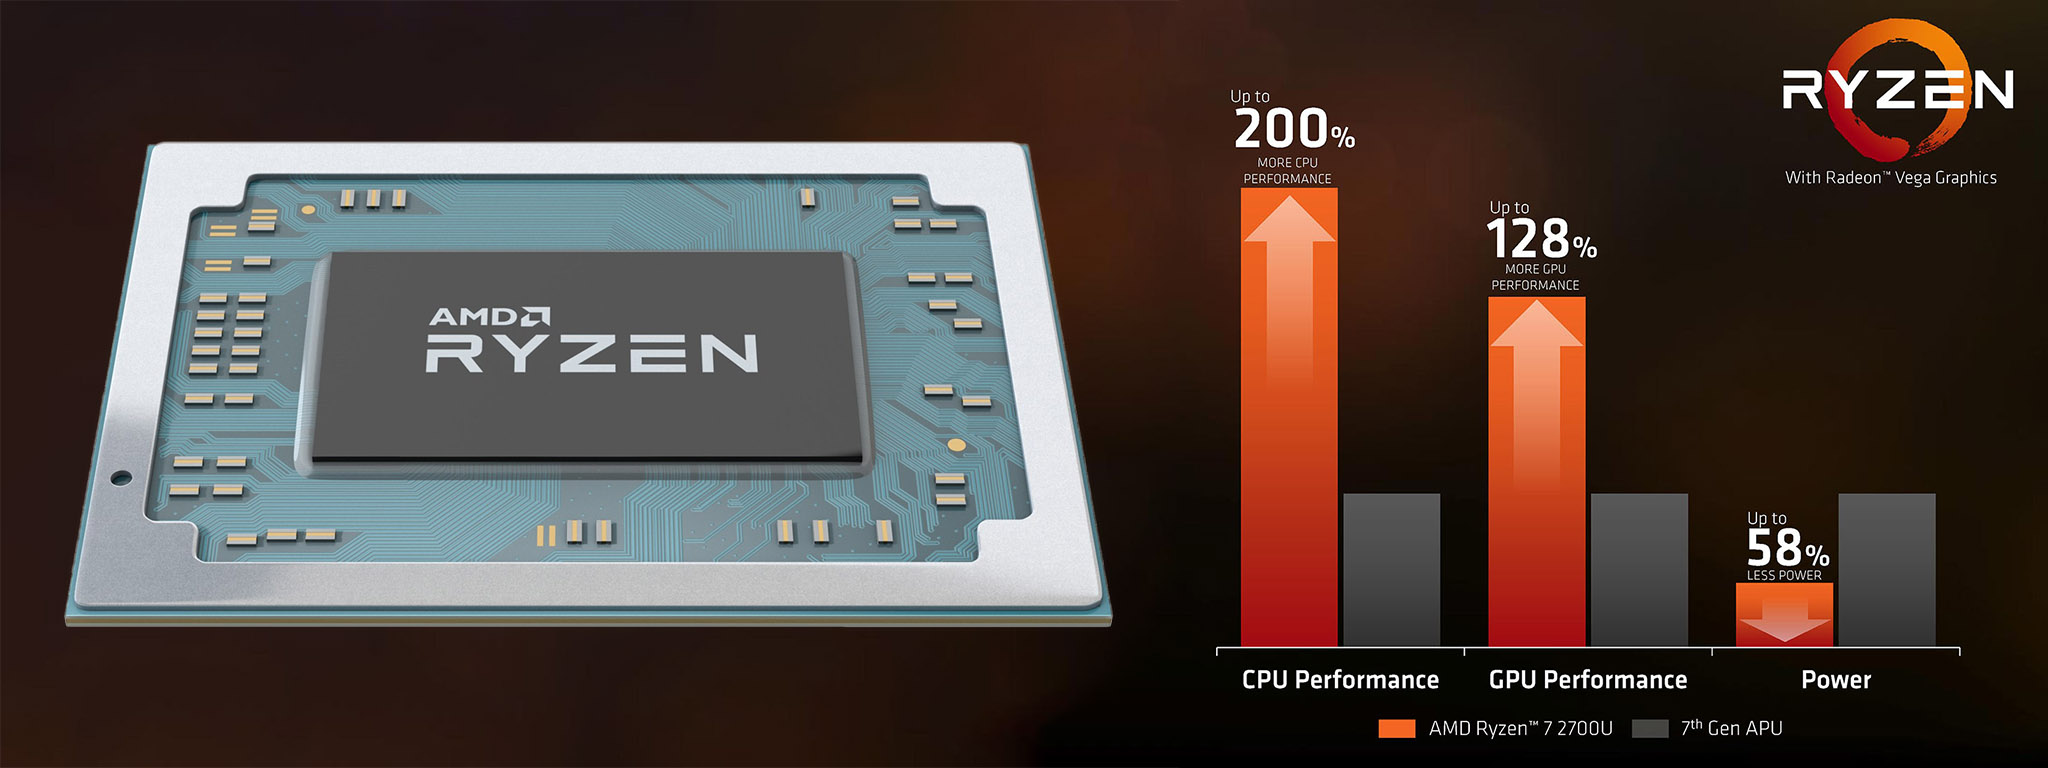 Chênh lệch sức mạnh giữa Ryzen Mobile và APU Gen 7th của AMD, nhân Vega vẫn chưa thể thay GPU rời